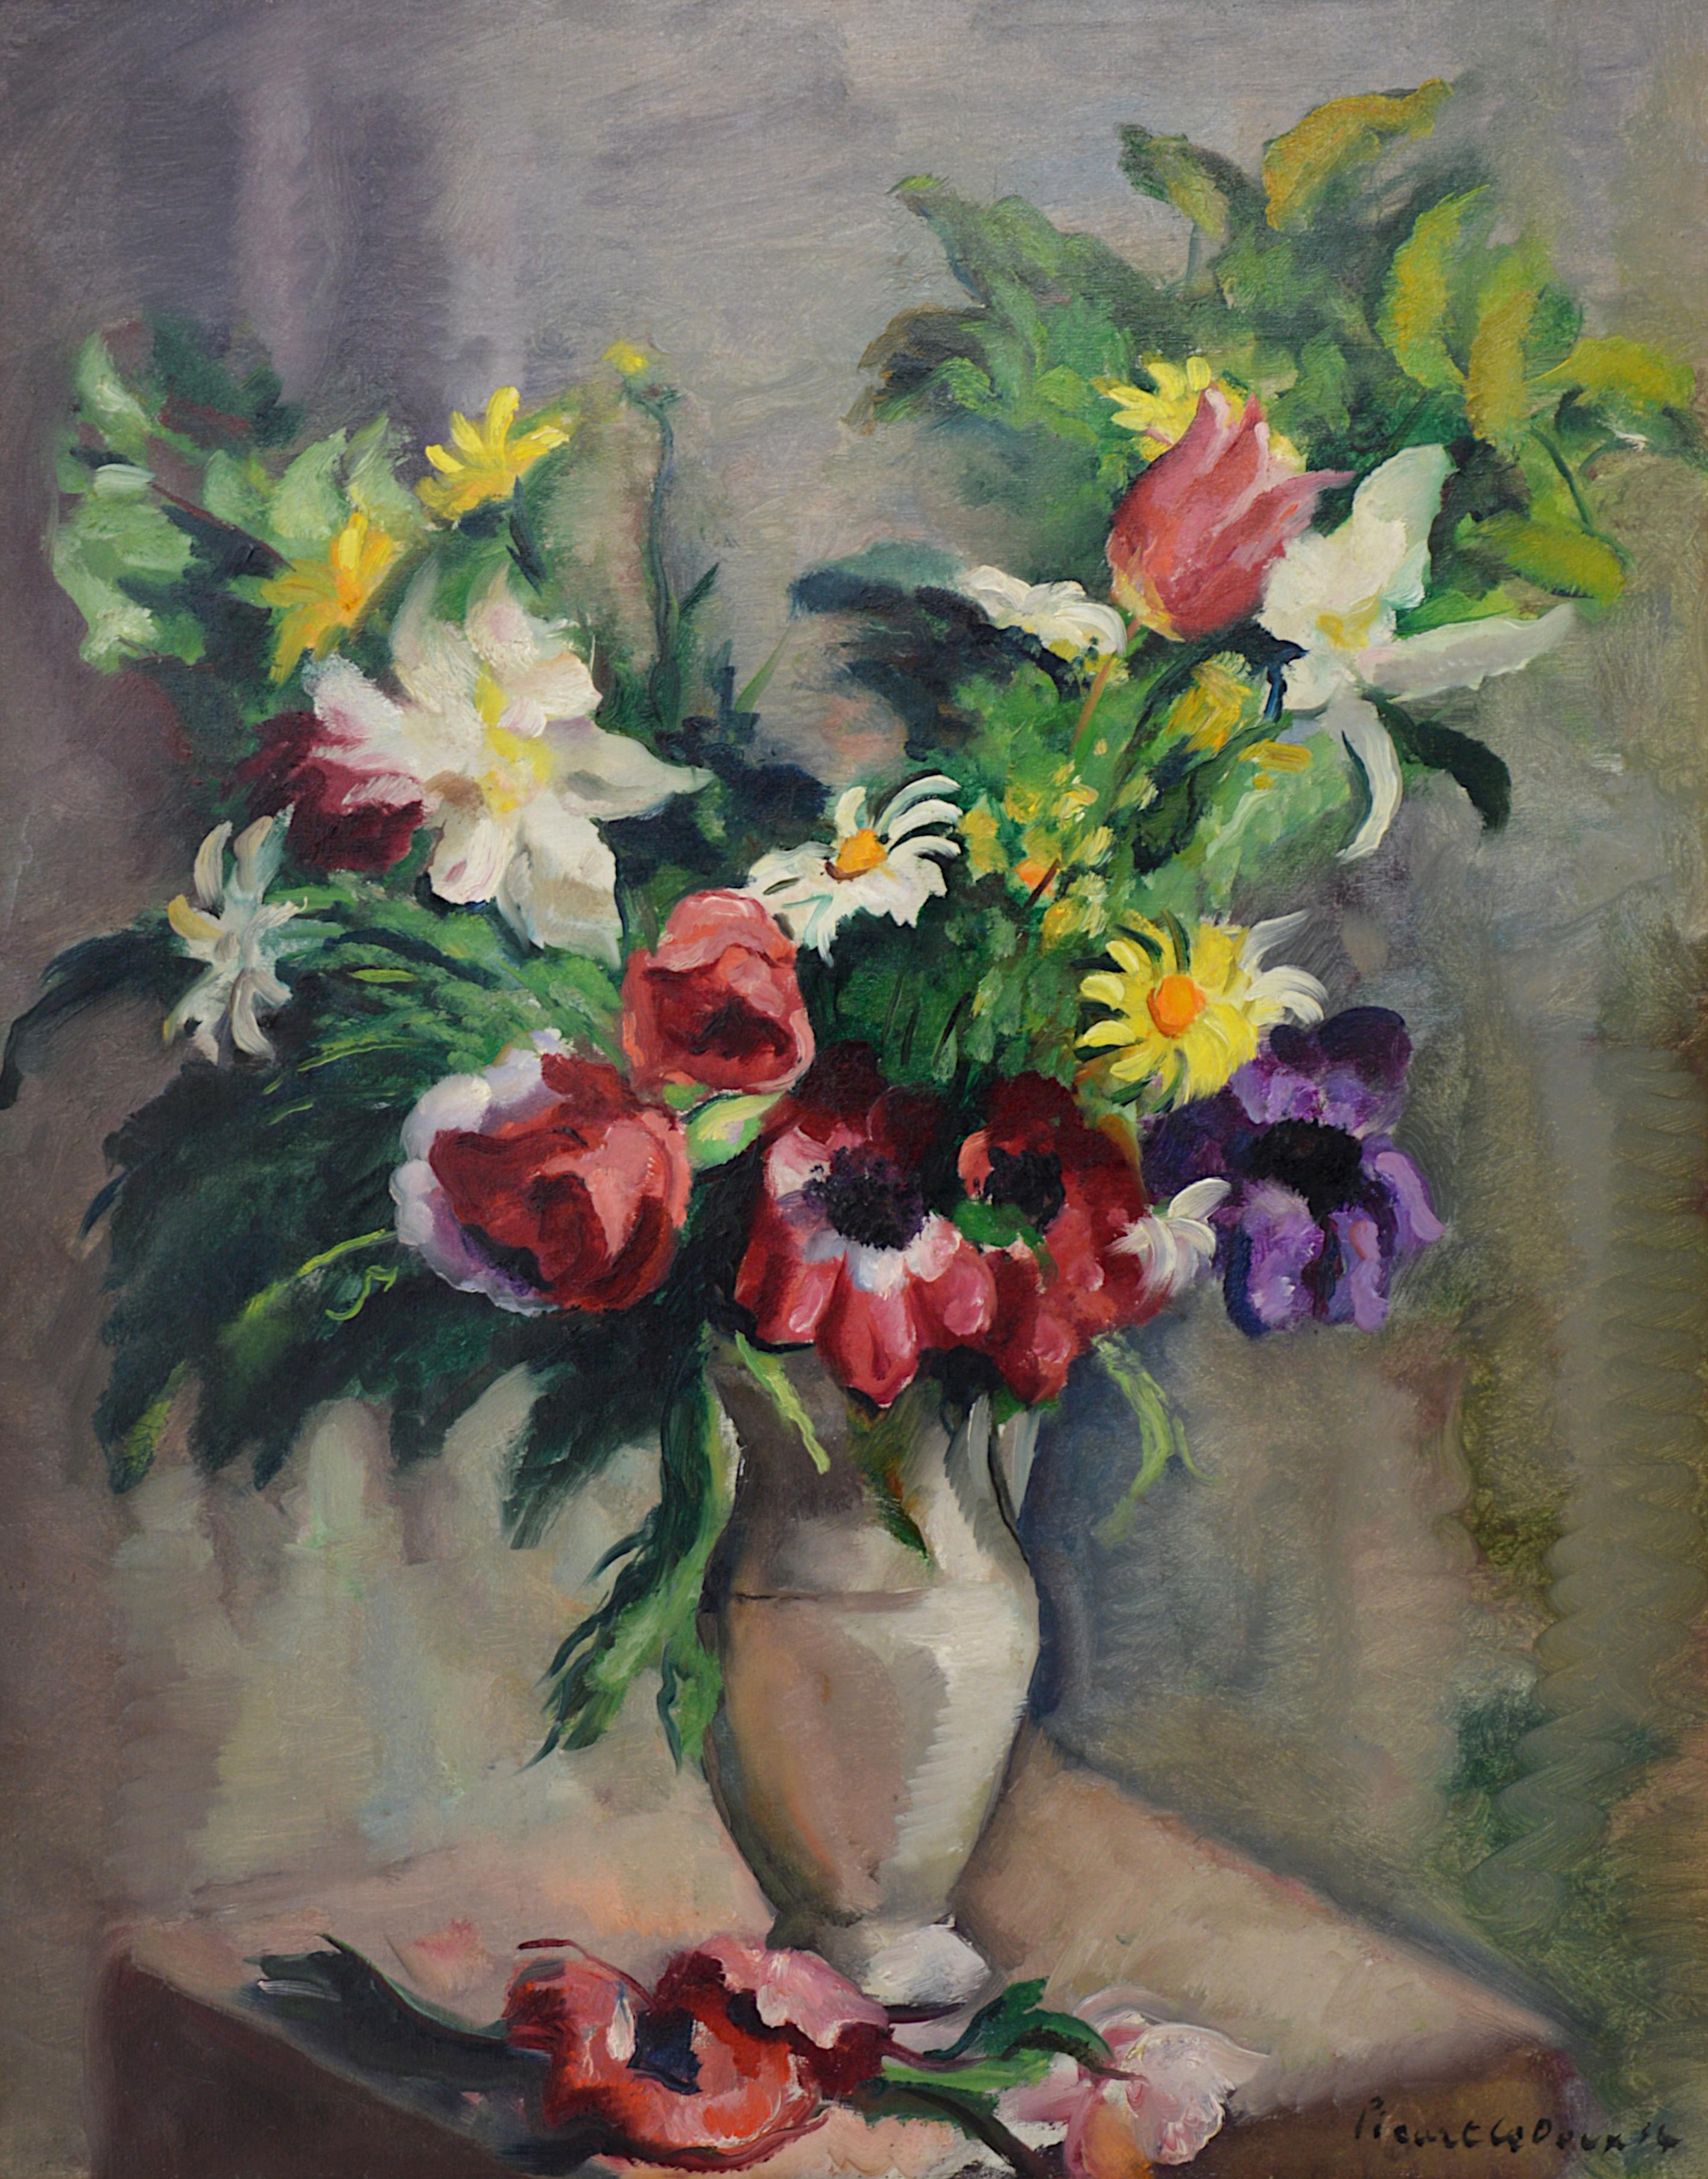 Charles PICART LE DOUX, Bouquet de fleurs sauvages, 1934 - Painting de Charles Picart le Doux